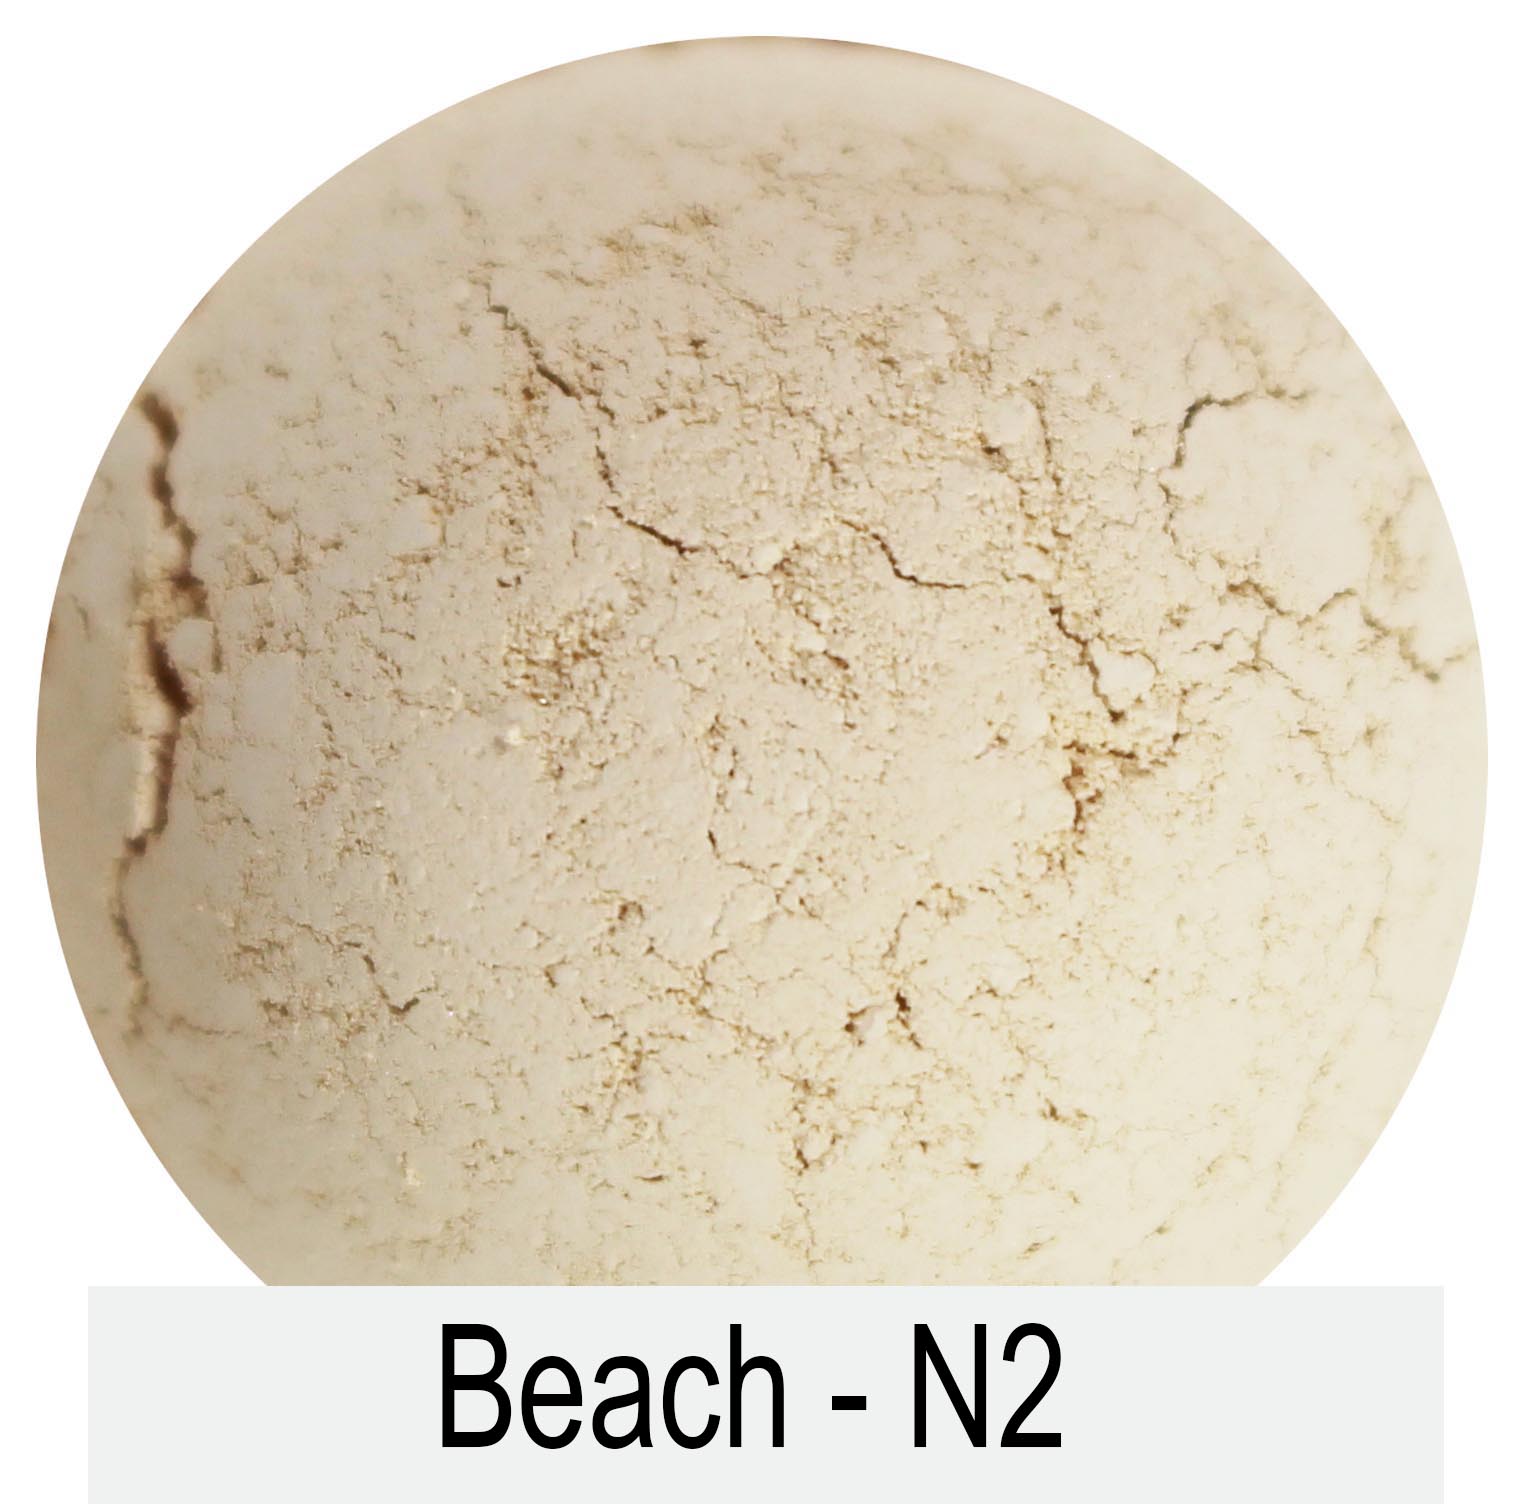 Beach N2